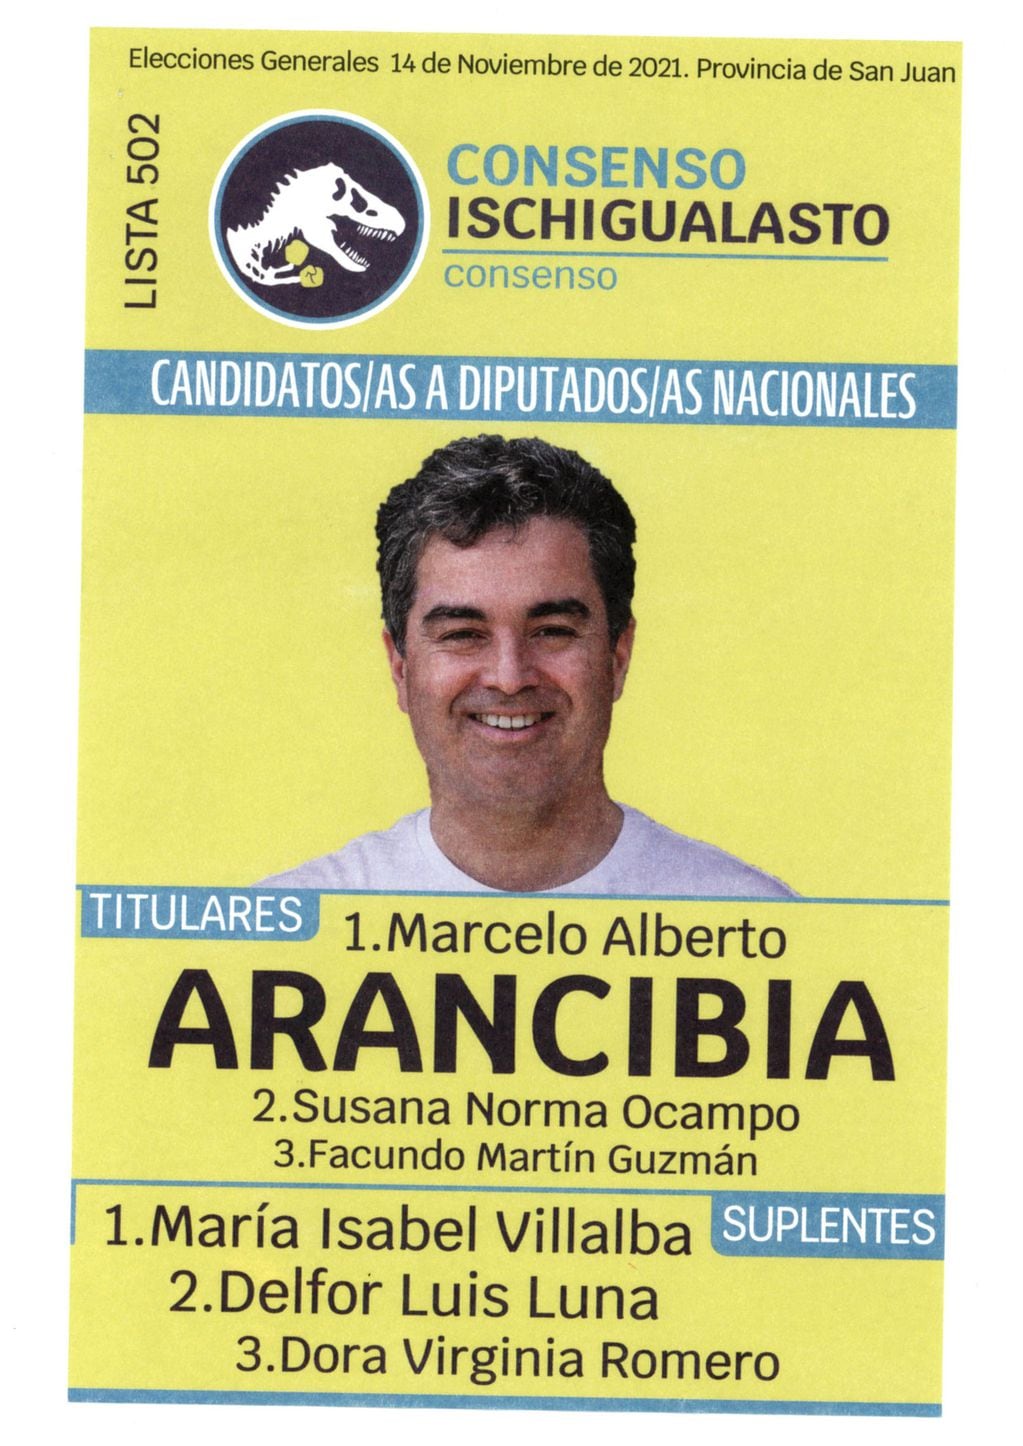 En la boleta de Consenso Ischigualasto aparece la foto de Marcelo Arancibia